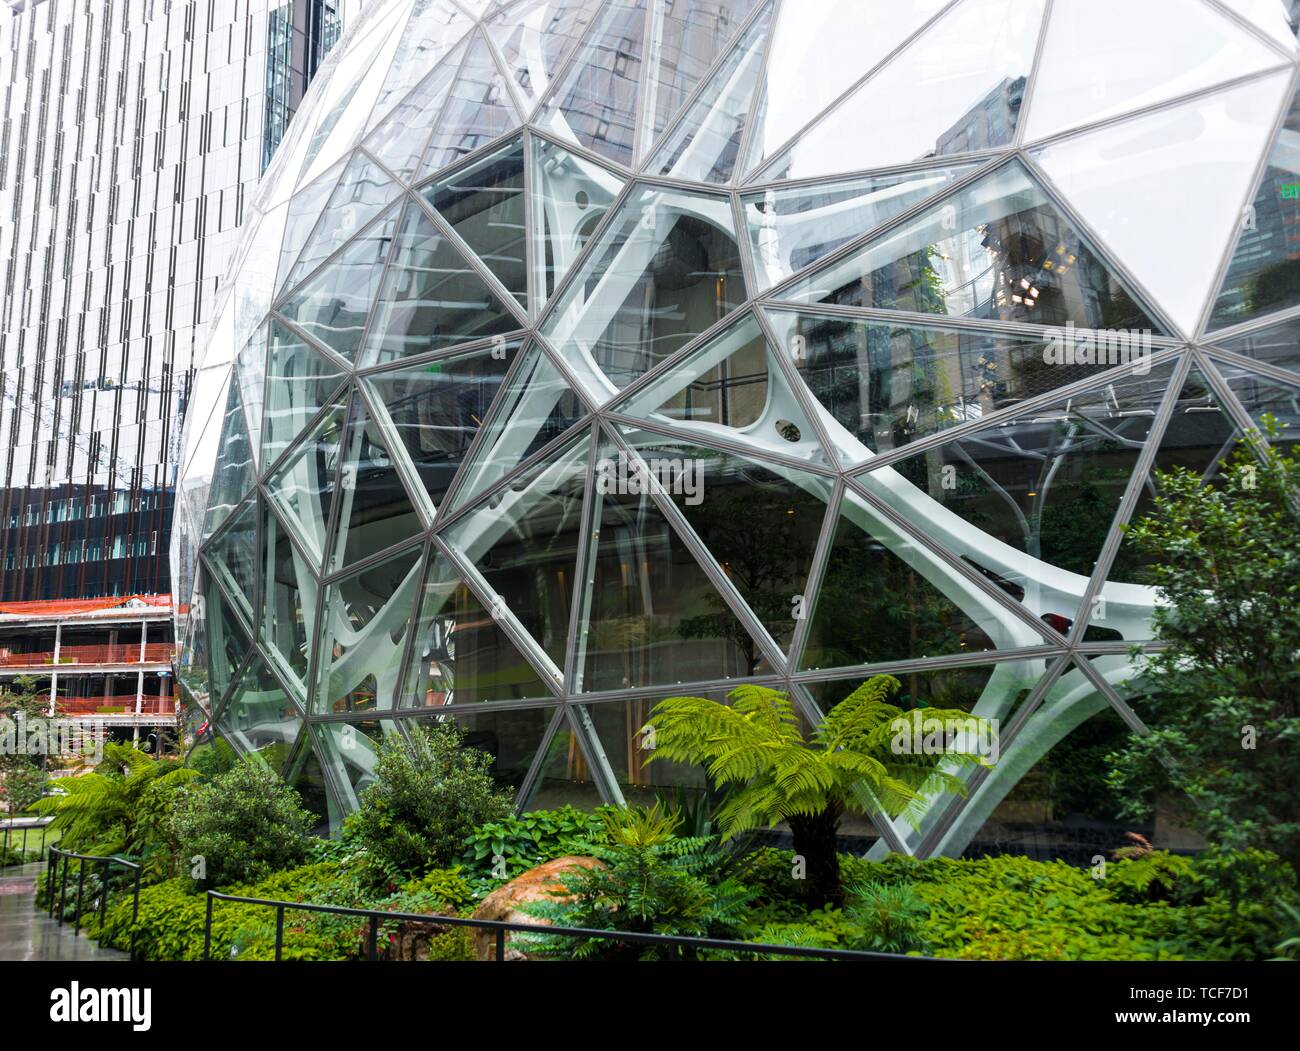 Espace vert devant un immeuble de bureaux modernes de Amazon, Amazon, sphères Les sphères, Seattle, Washington, USA, Amérique du Nord Banque D'Images